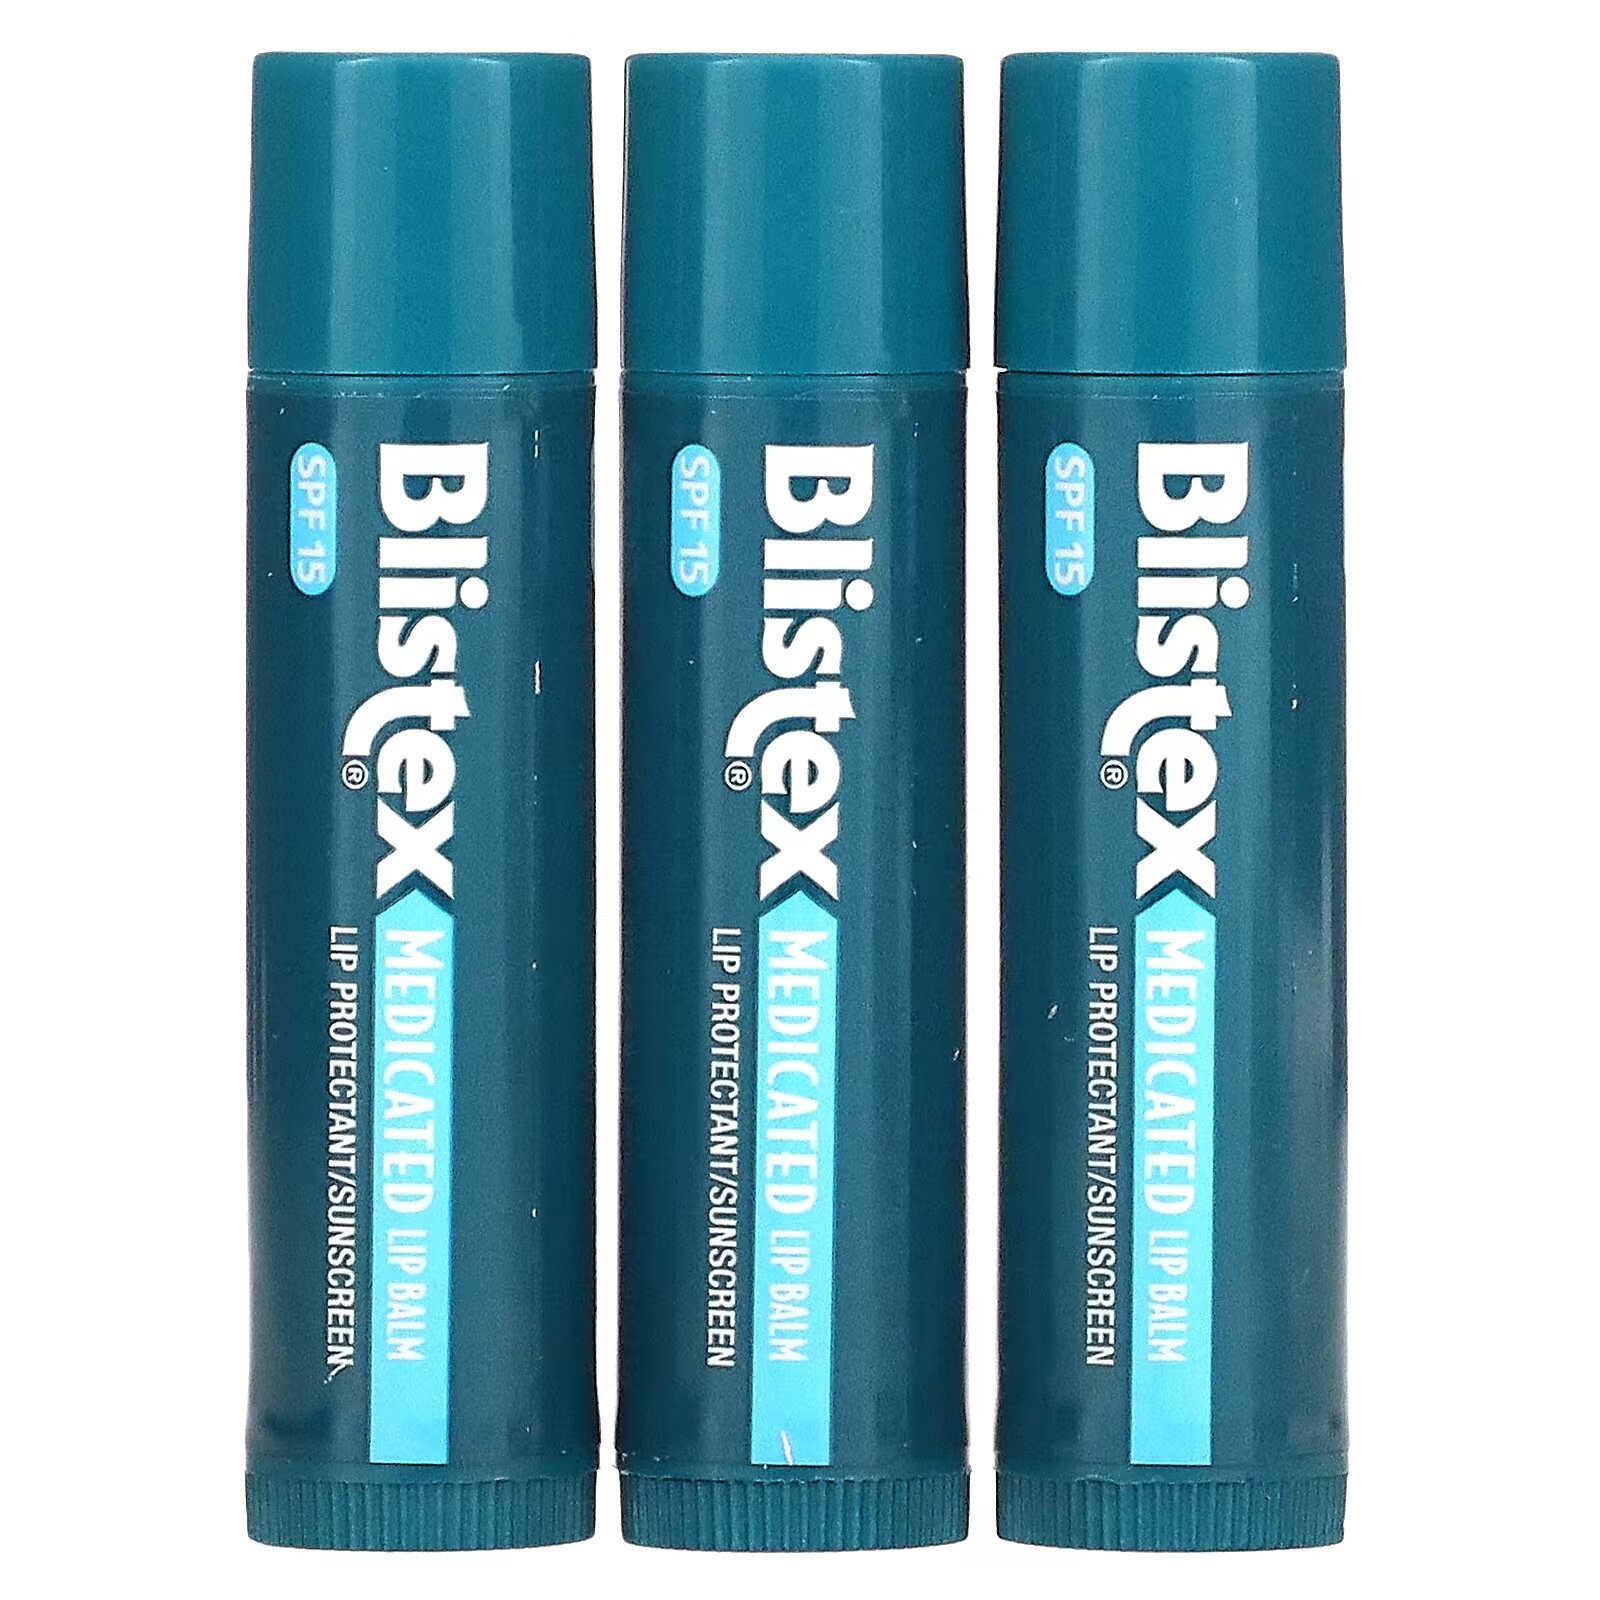 Заживляющий бальзам для губ Blistex с солнцезащитным фильтром SPF 15, в упаковке 3 бальзама по 4,25 г фотографии